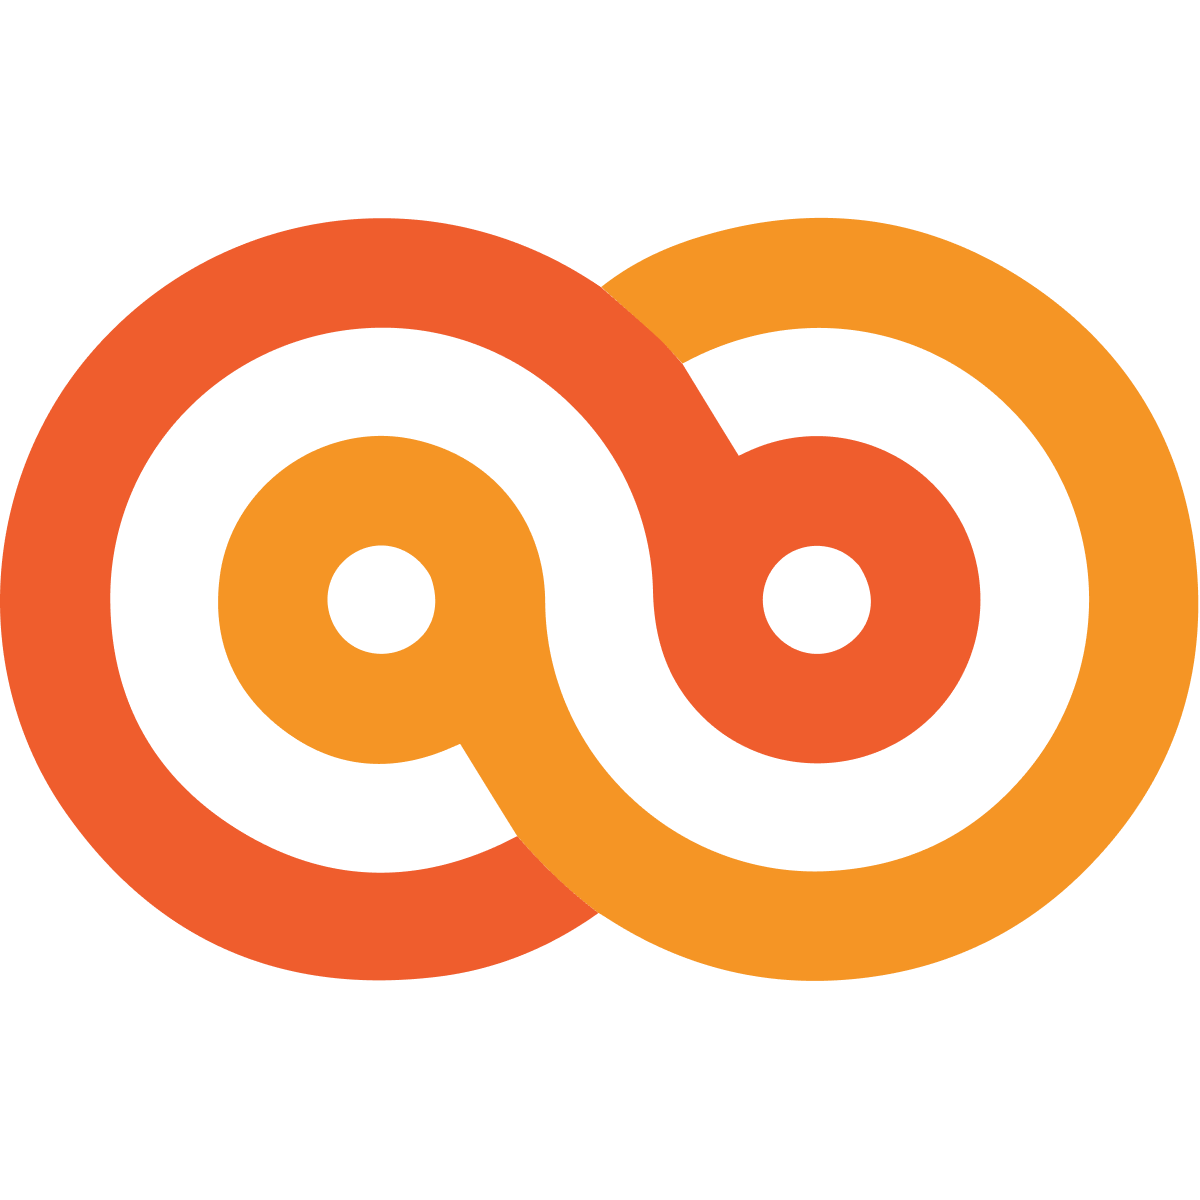 Analyzee logo